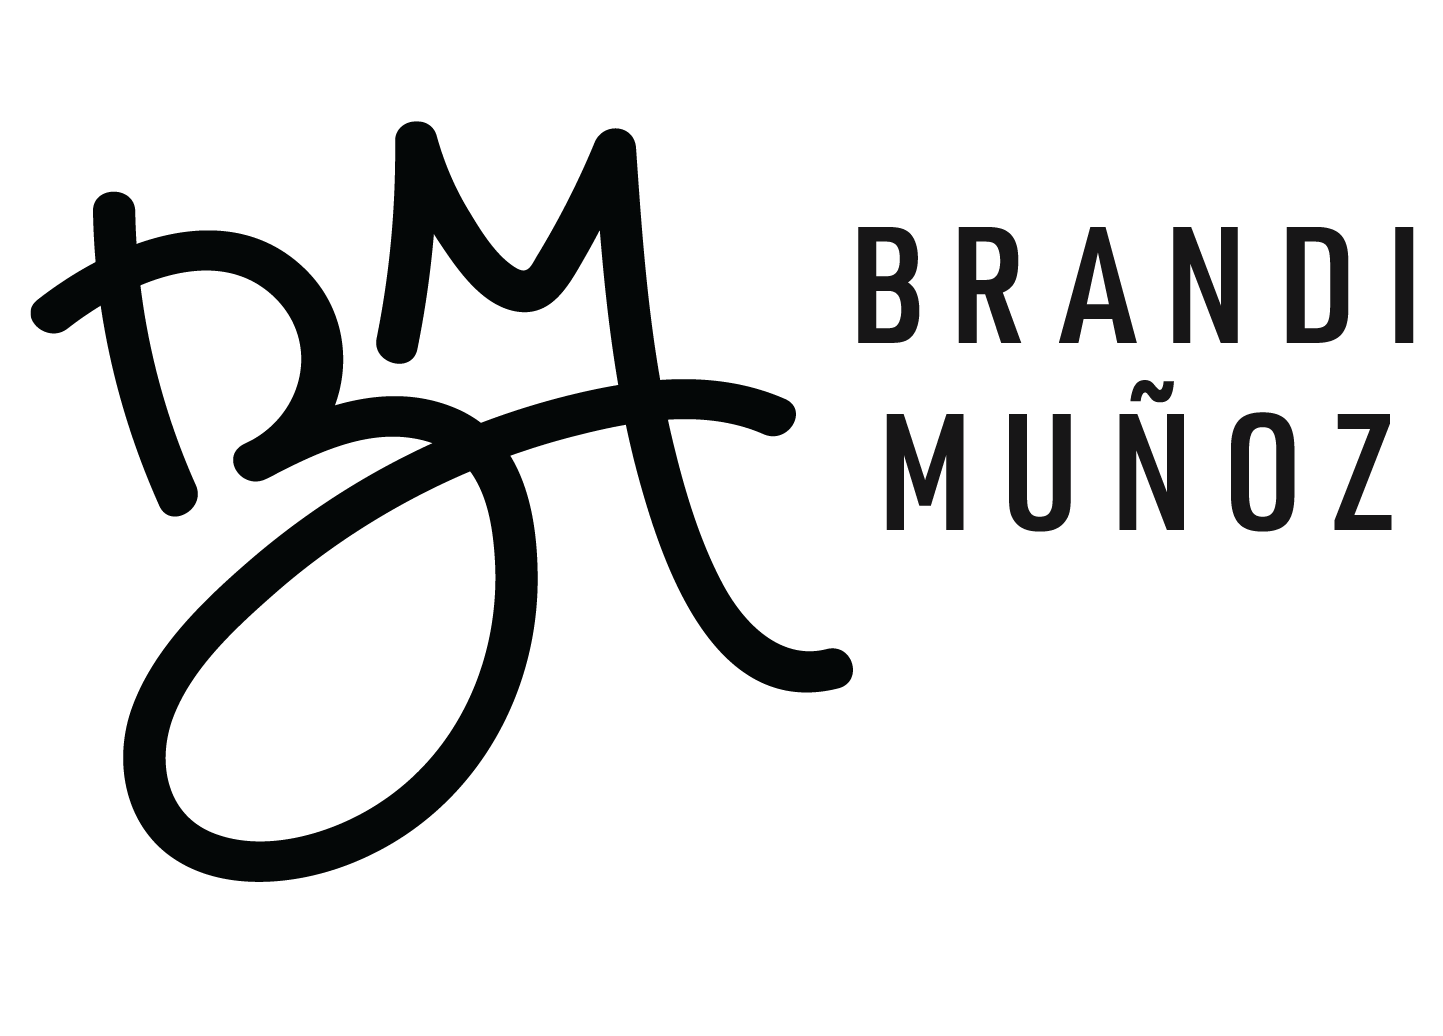 Brandi Munoz